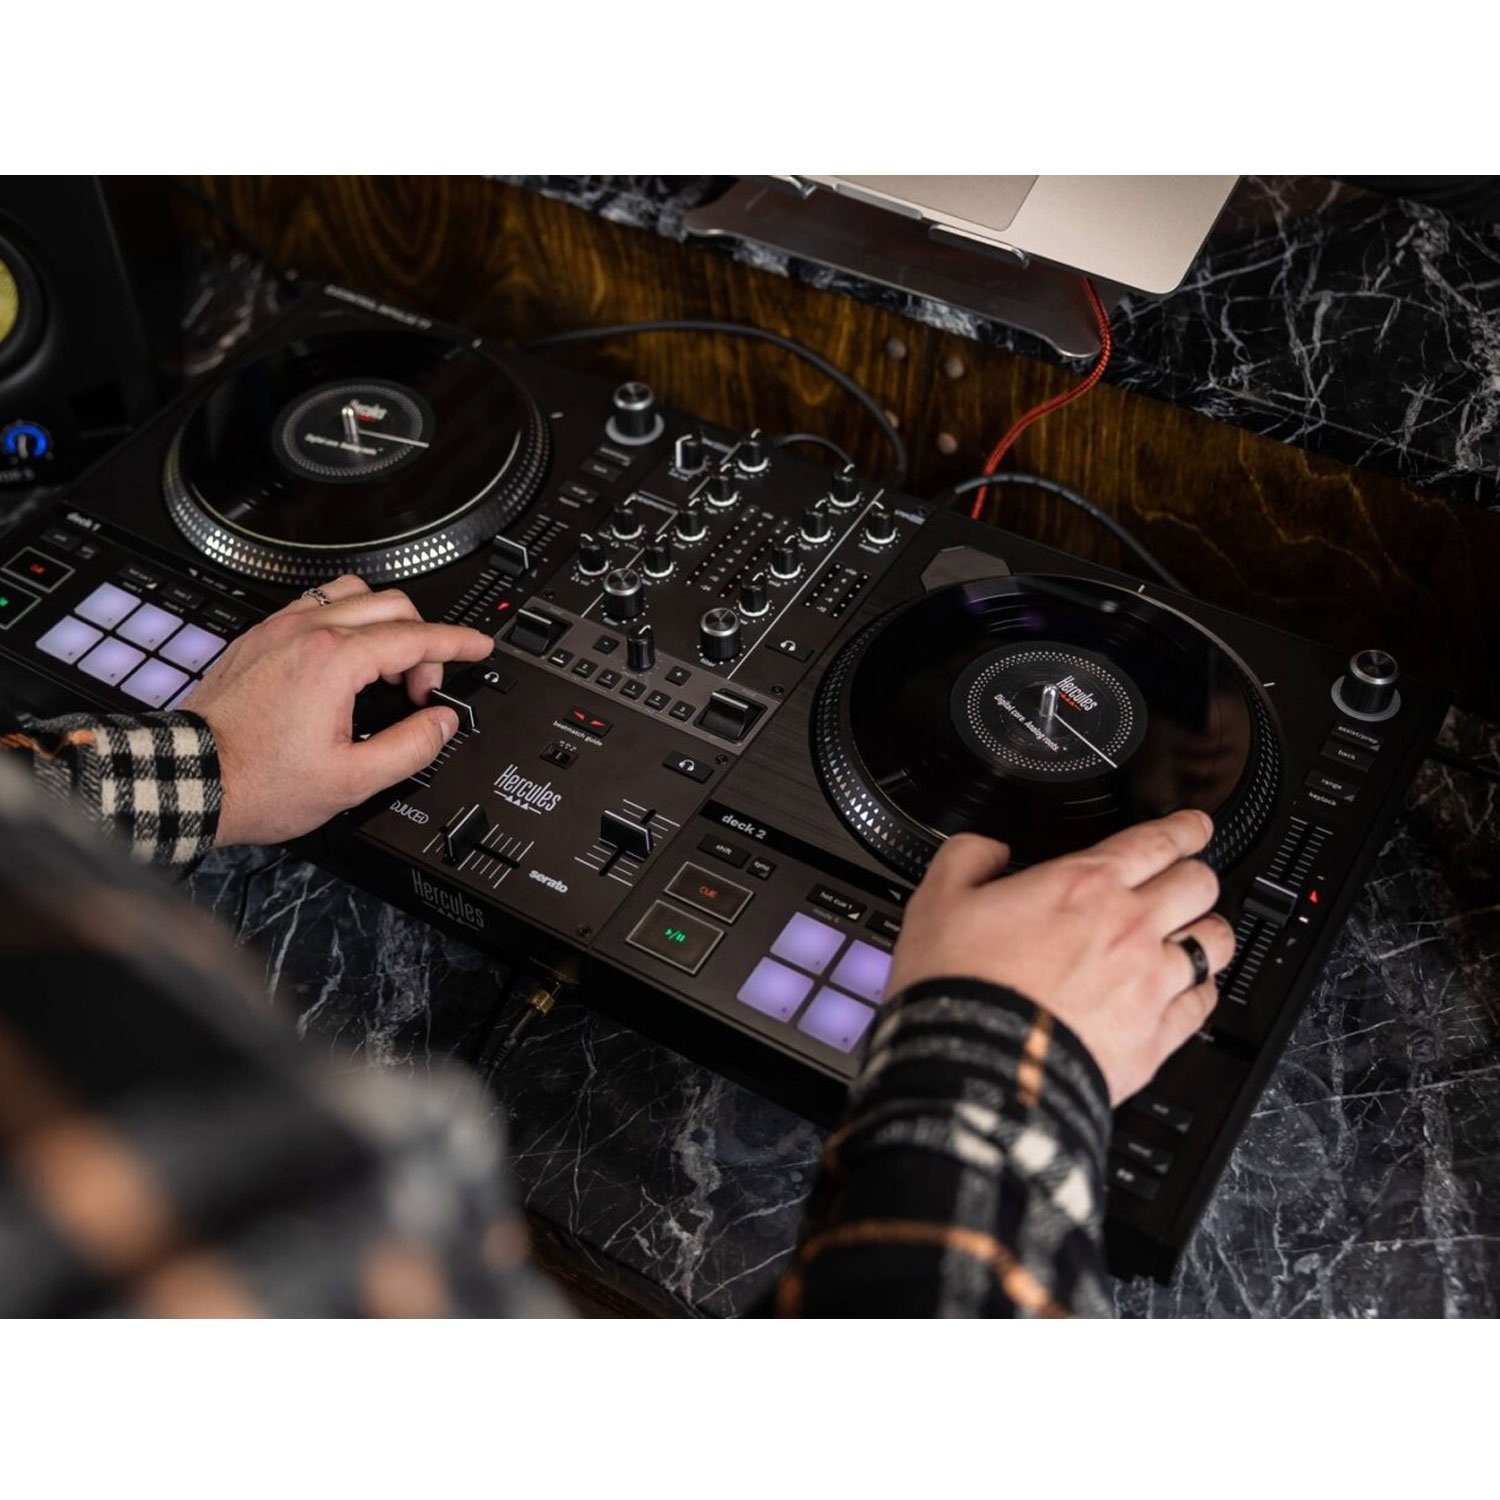 Inkl DJ T-7 Inpulse USB-DJ-Pult, Controller HERCULES 2-Deck DJ-Software DJControl